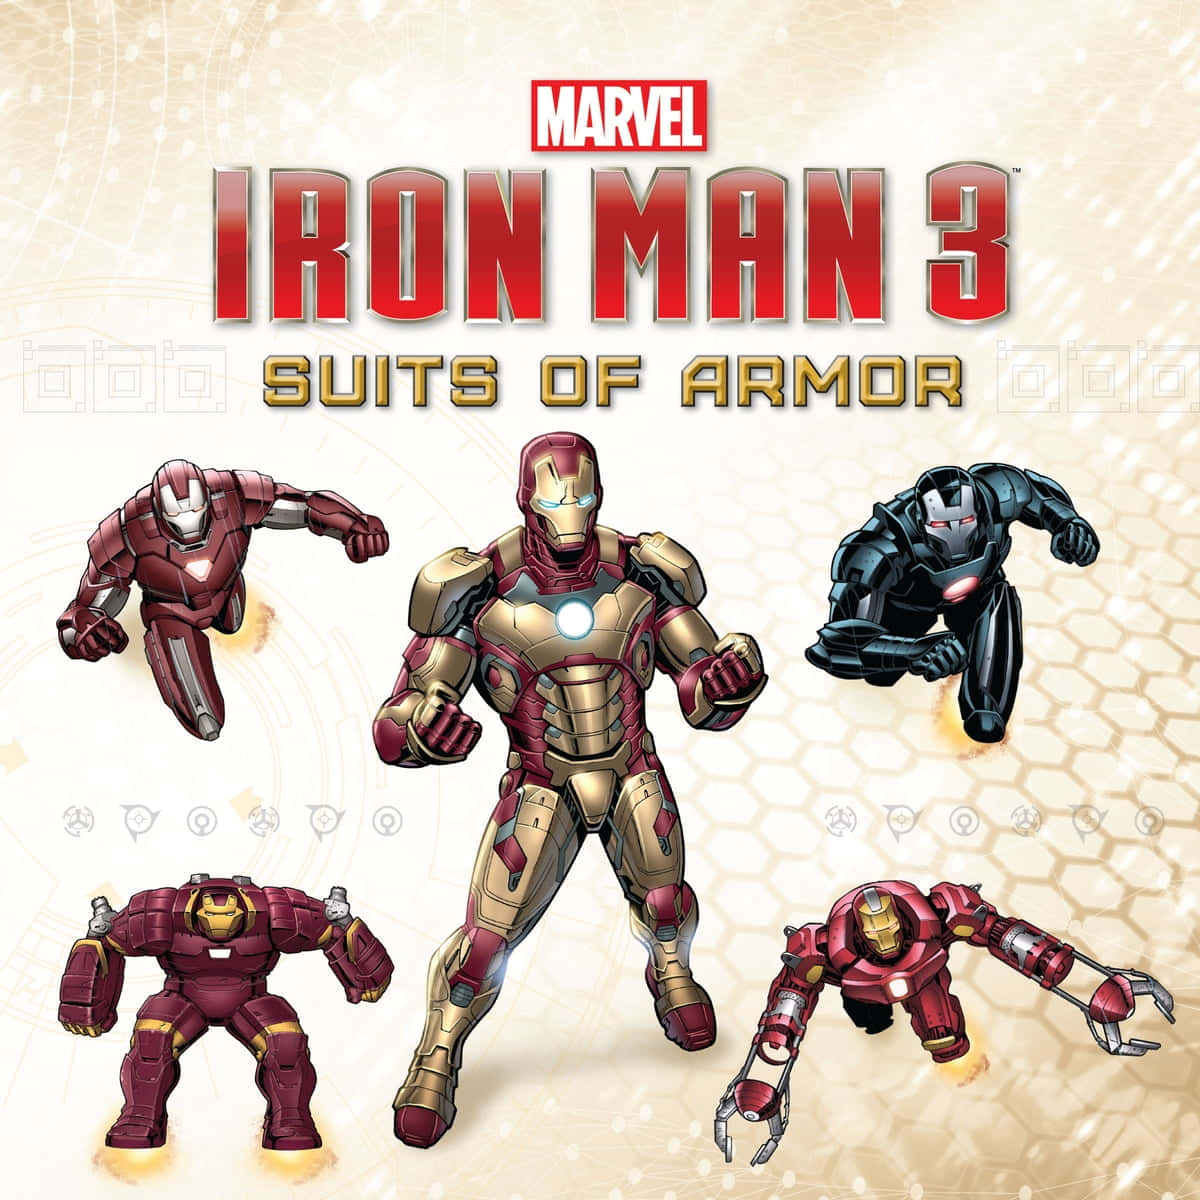 Billedetviser Kunst Af Action-figurer Med Iron Man Rustningsdragter.